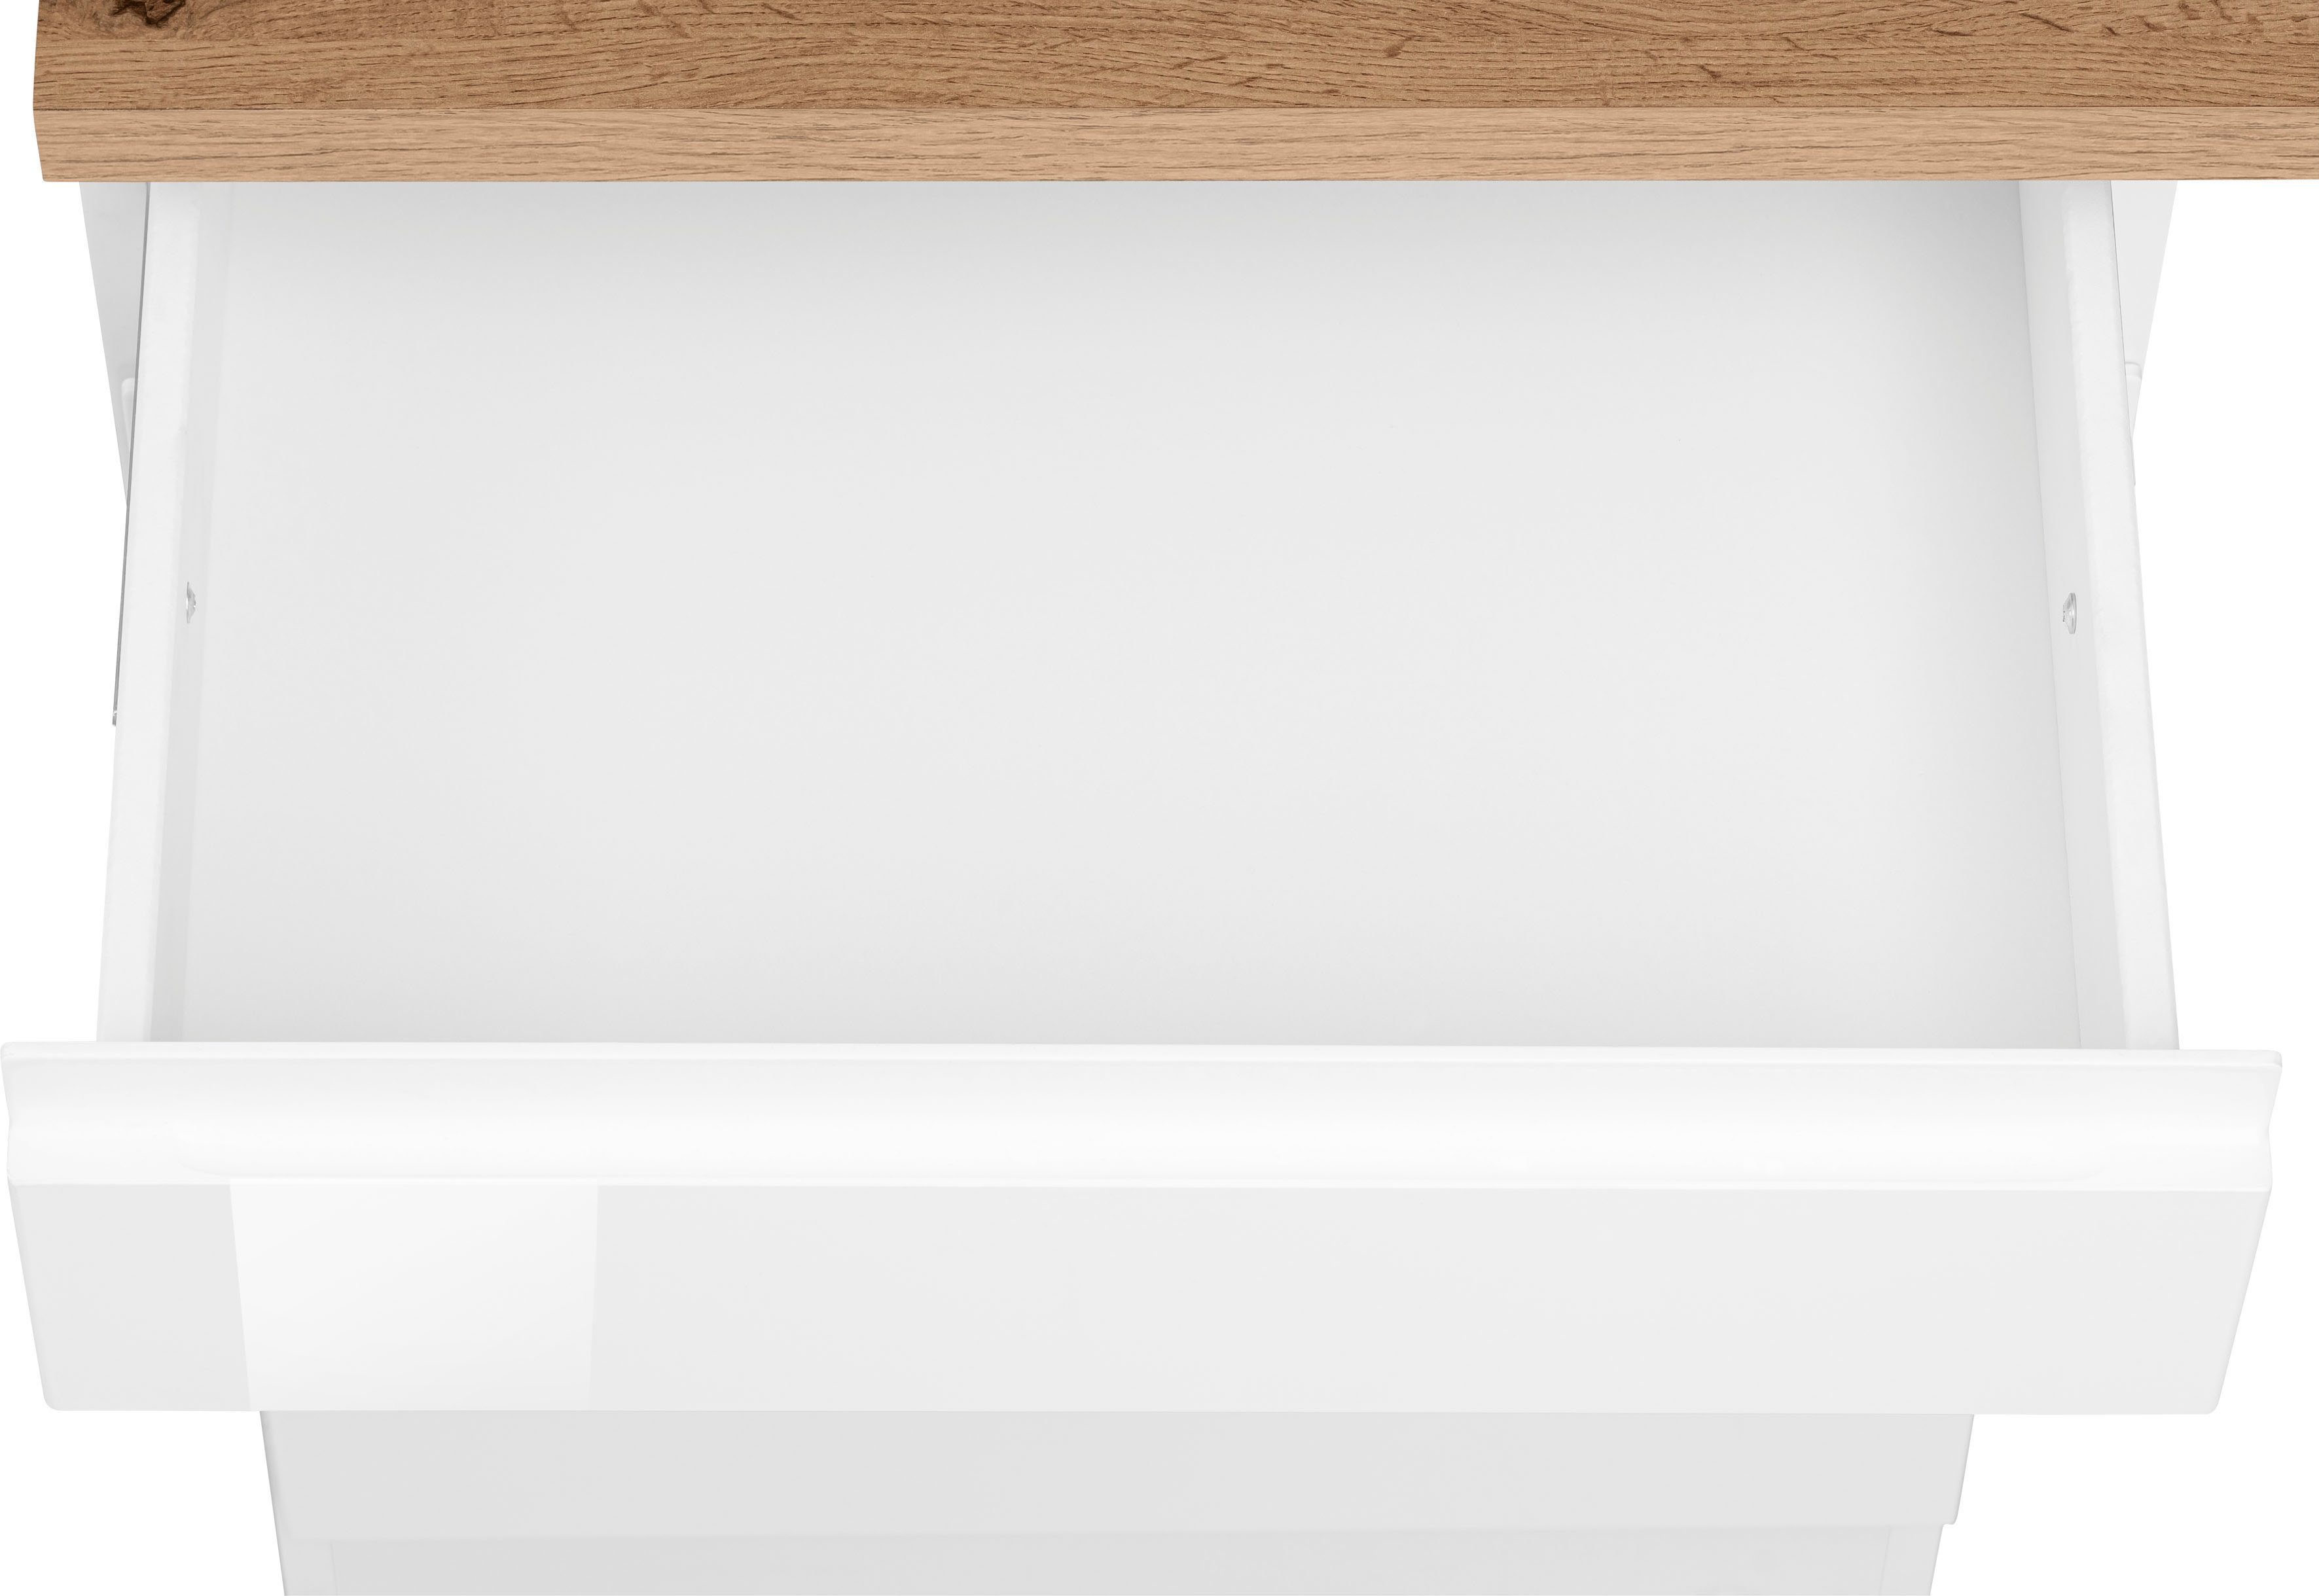 HELD MÖBEL Küche Virginia, Breite mit weiß E-Geräten weiß | Hochglanz weiß hochglanz/weiß-wotaneiche | 330 cm